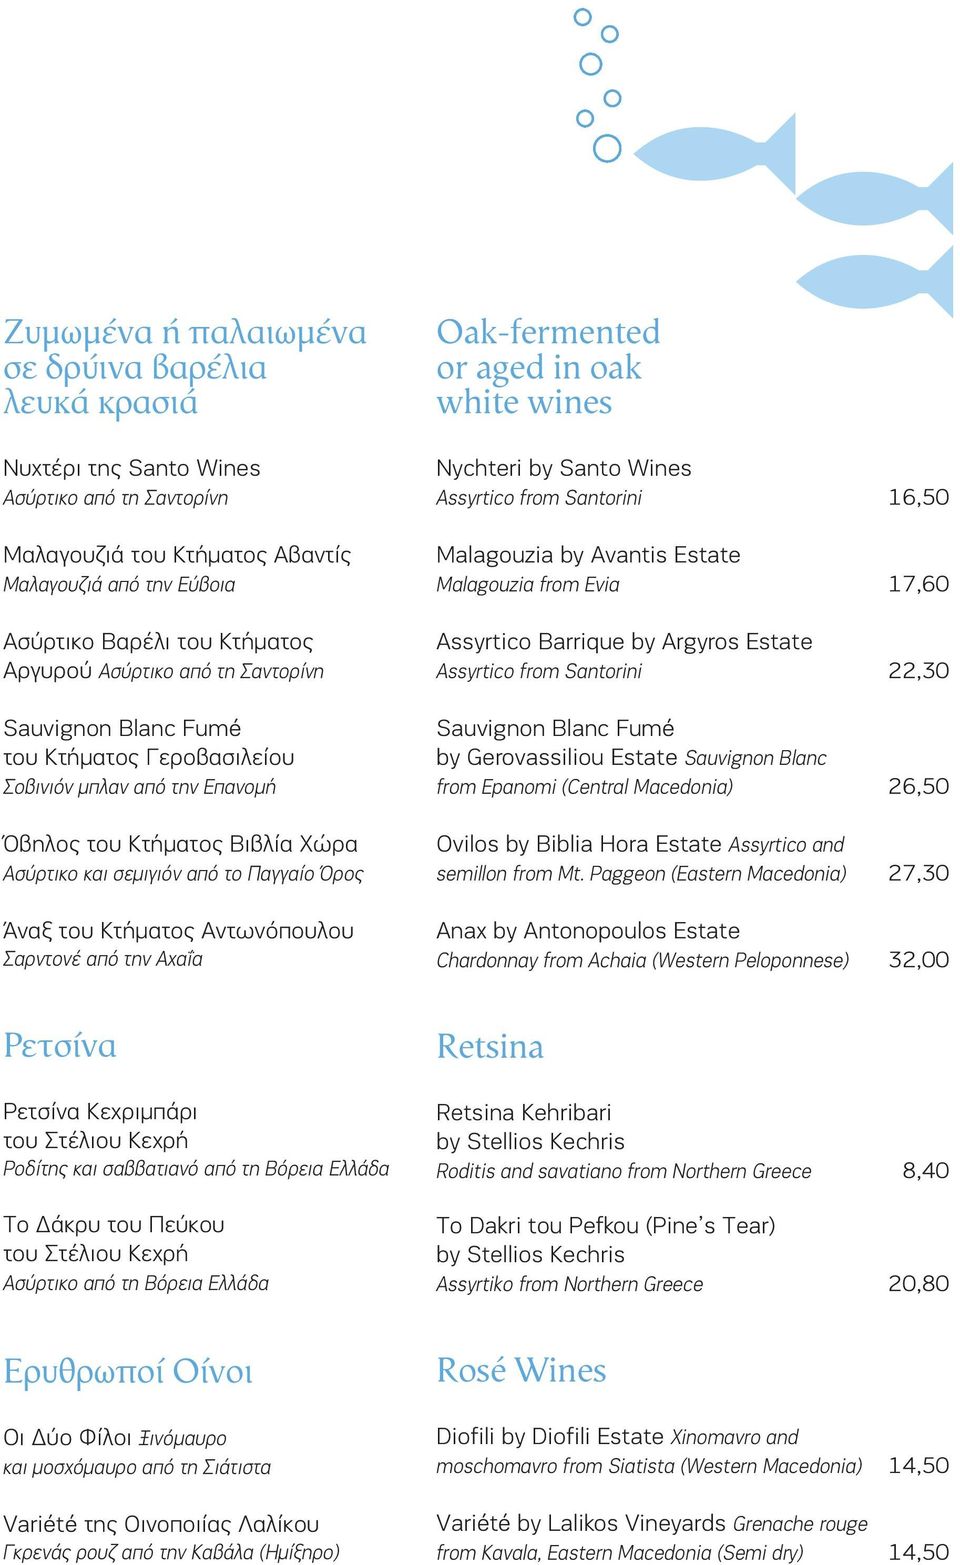 Αντωνόπουλου Σαρντονέ από την Αχαΐα Oak-fermented or aged in oak white wines Nychteri by Santo Wines Assyrtico from Santorini 16,50 Malagouzia by Avantis Estate Malagouzia from Evia 17,60 Assyrtico